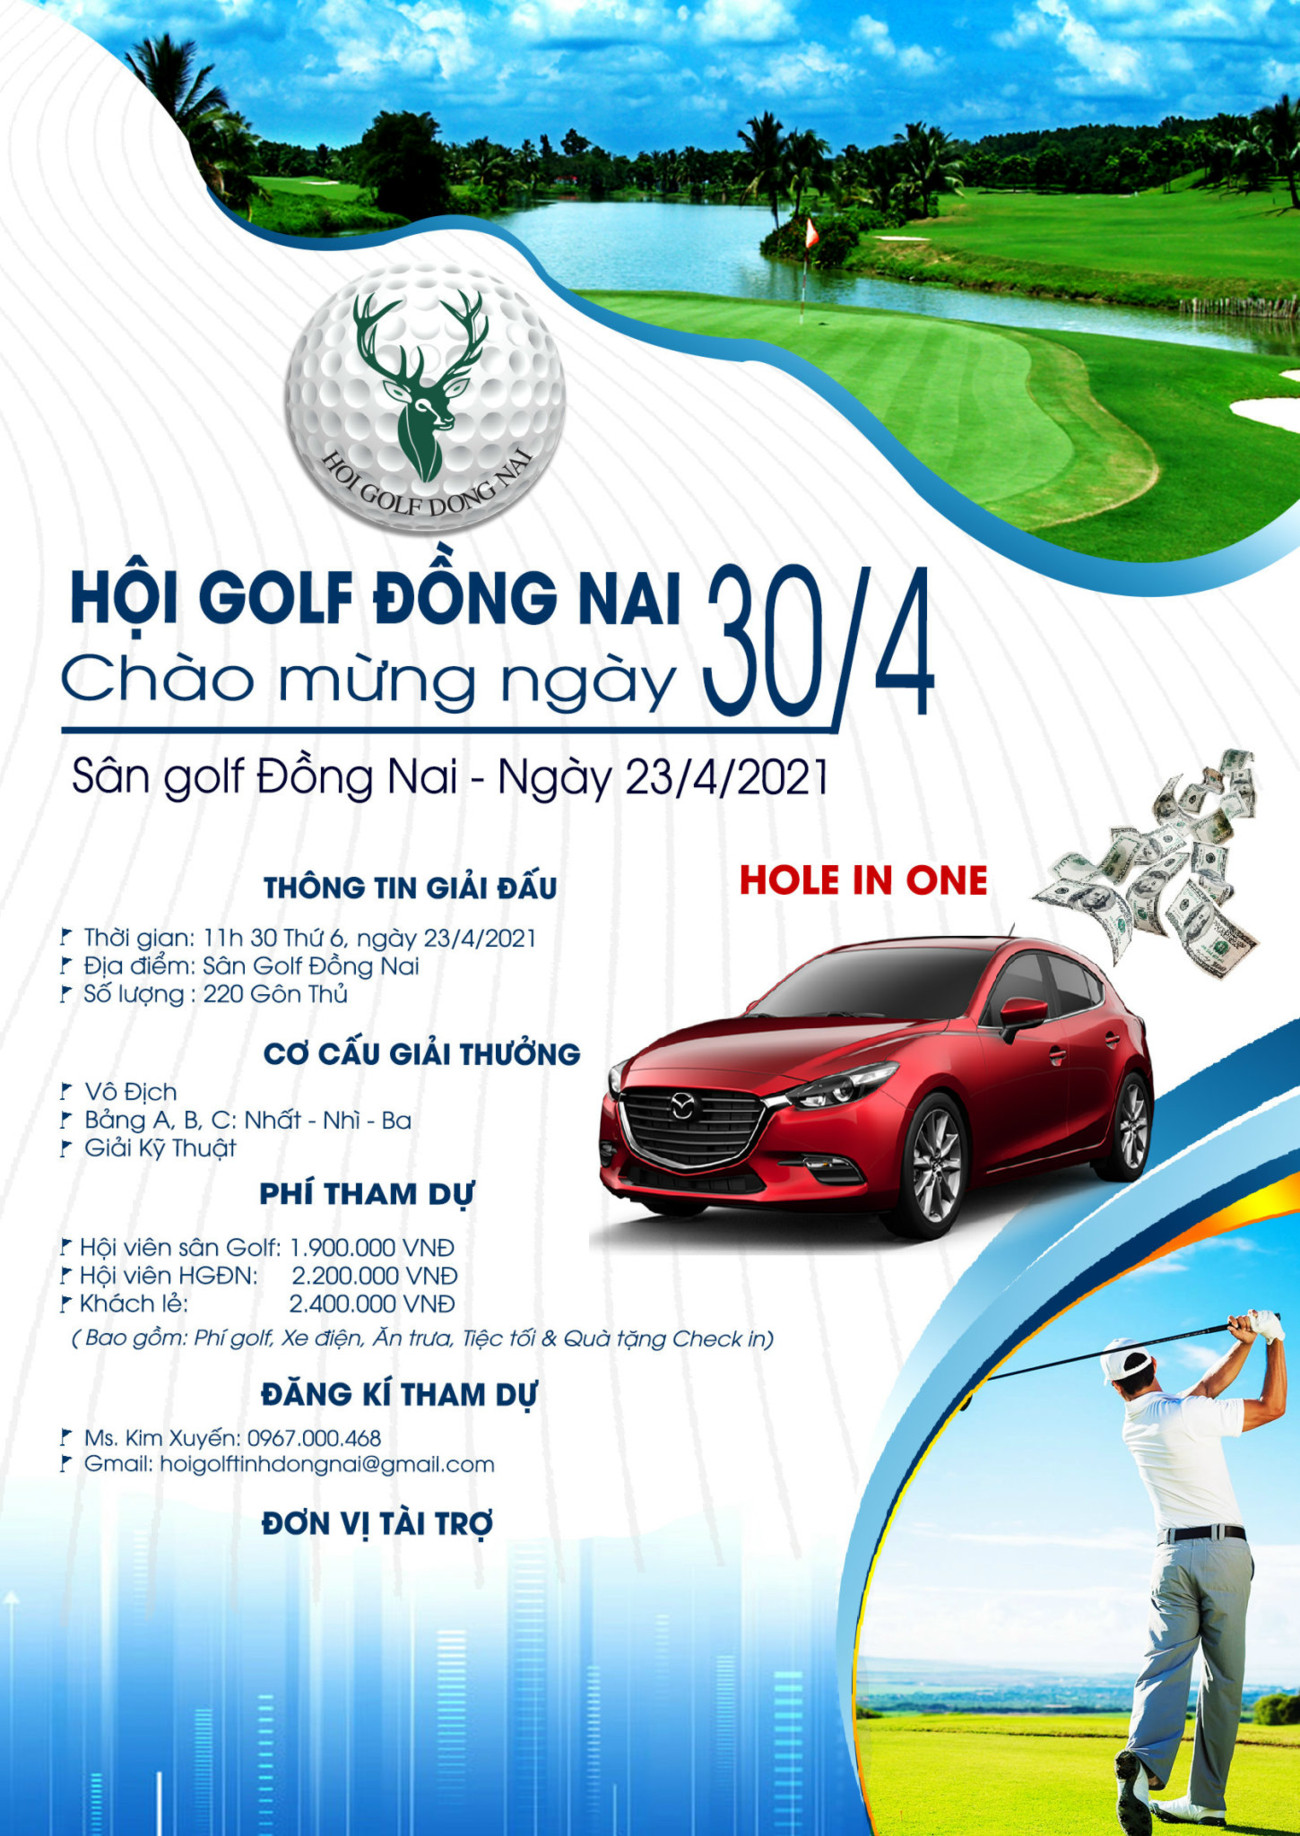 Hội golf Đồng Nai tổ chức giải chào mừng 30/4 - Ảnh 1.